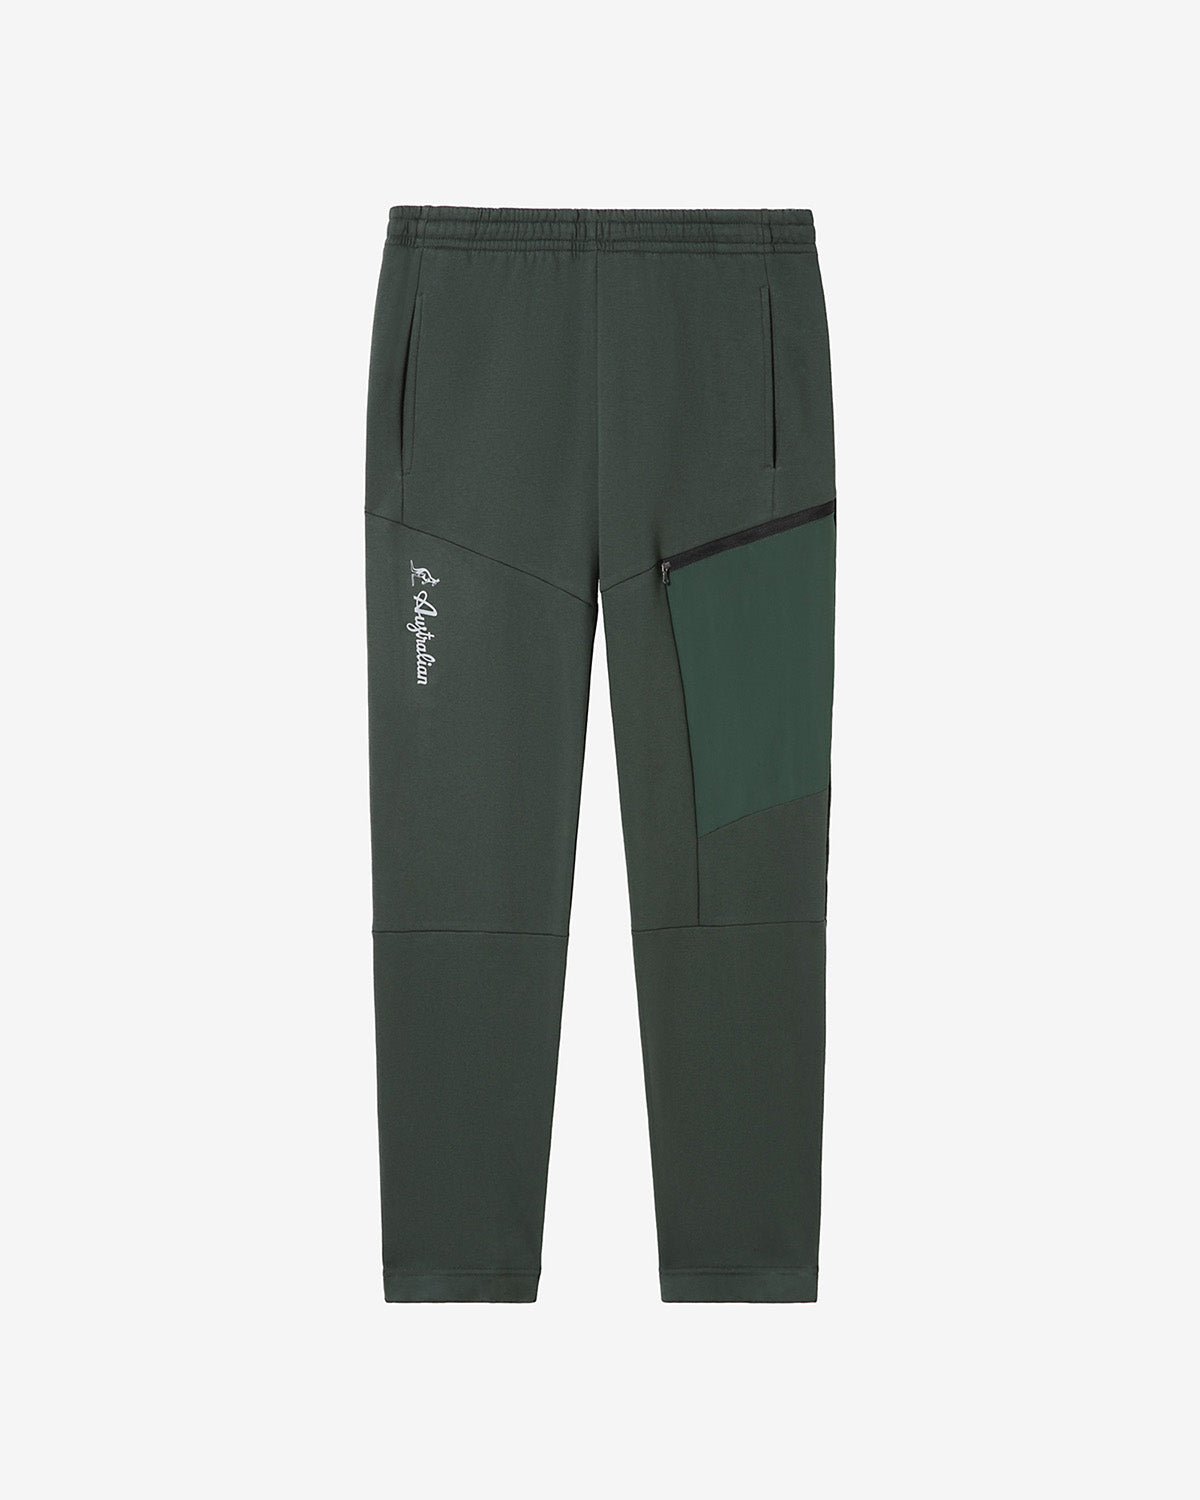 Tek-Fleece Pant: Australian Sportswear